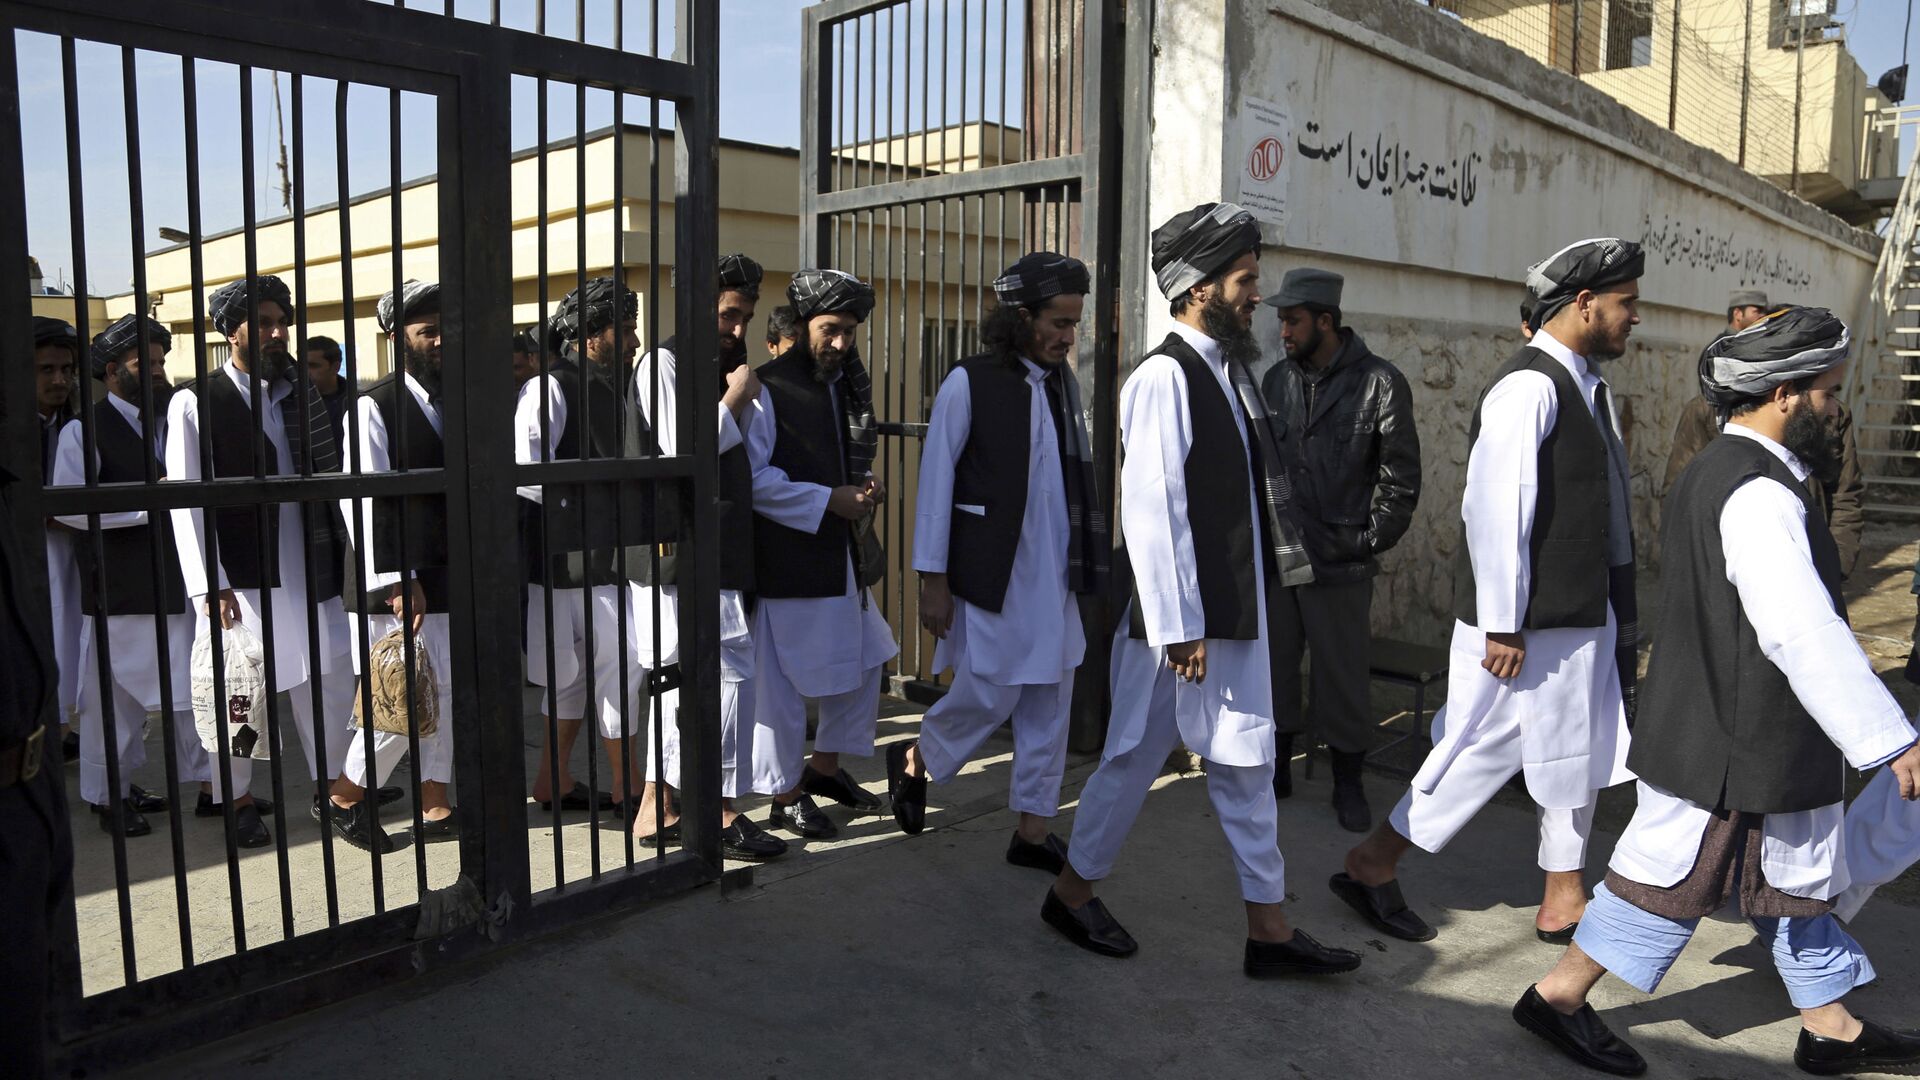 Афганские заключенные готовятся к освобождению из тюрьмы, архивное фото - Sputnik Таджикистан, 1920, 19.08.2021